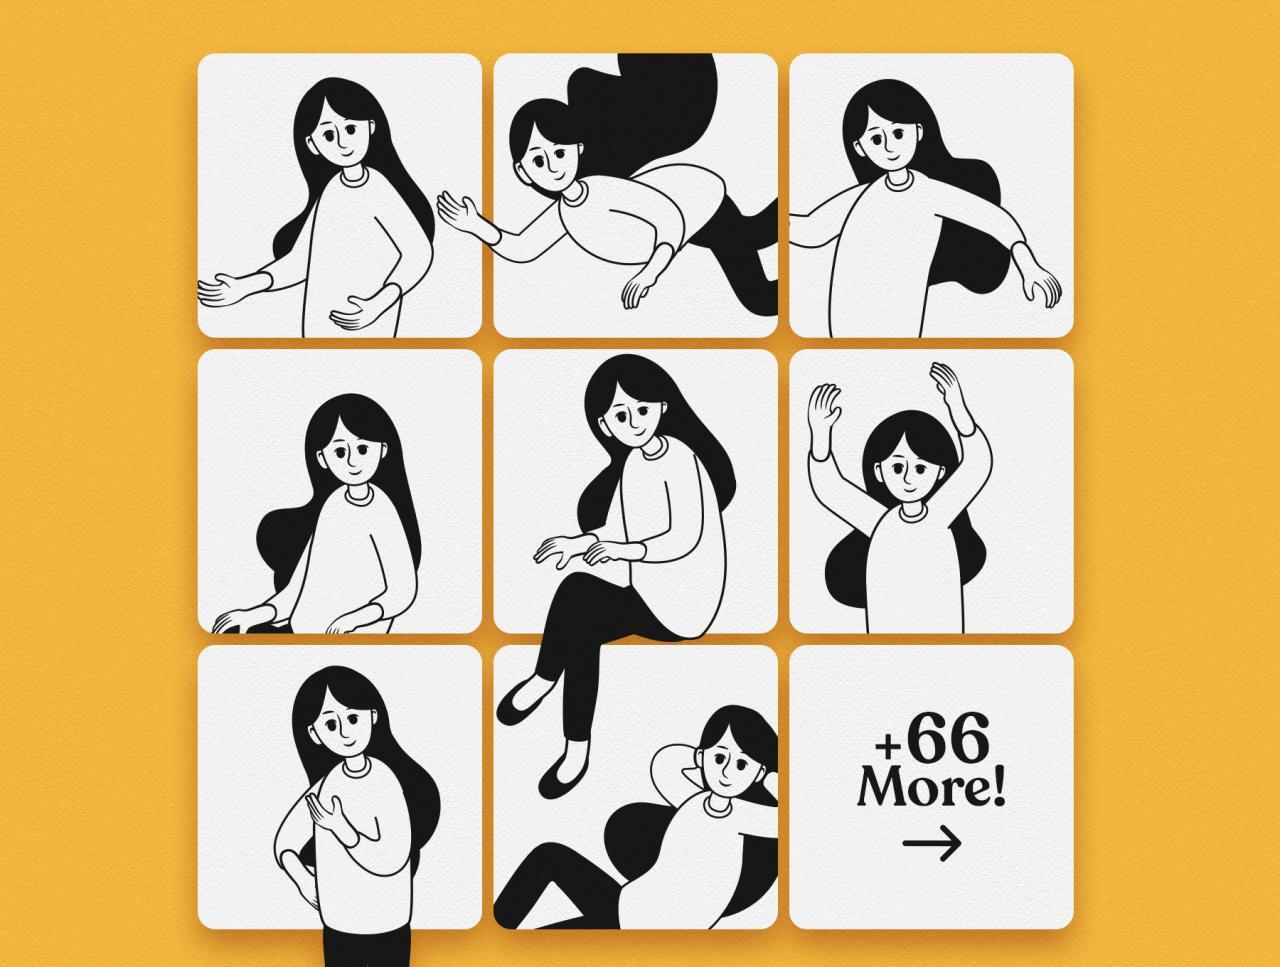 55 女性职场人物动作办公文具设备线条插画矢量素材包Character Set V01 Anne